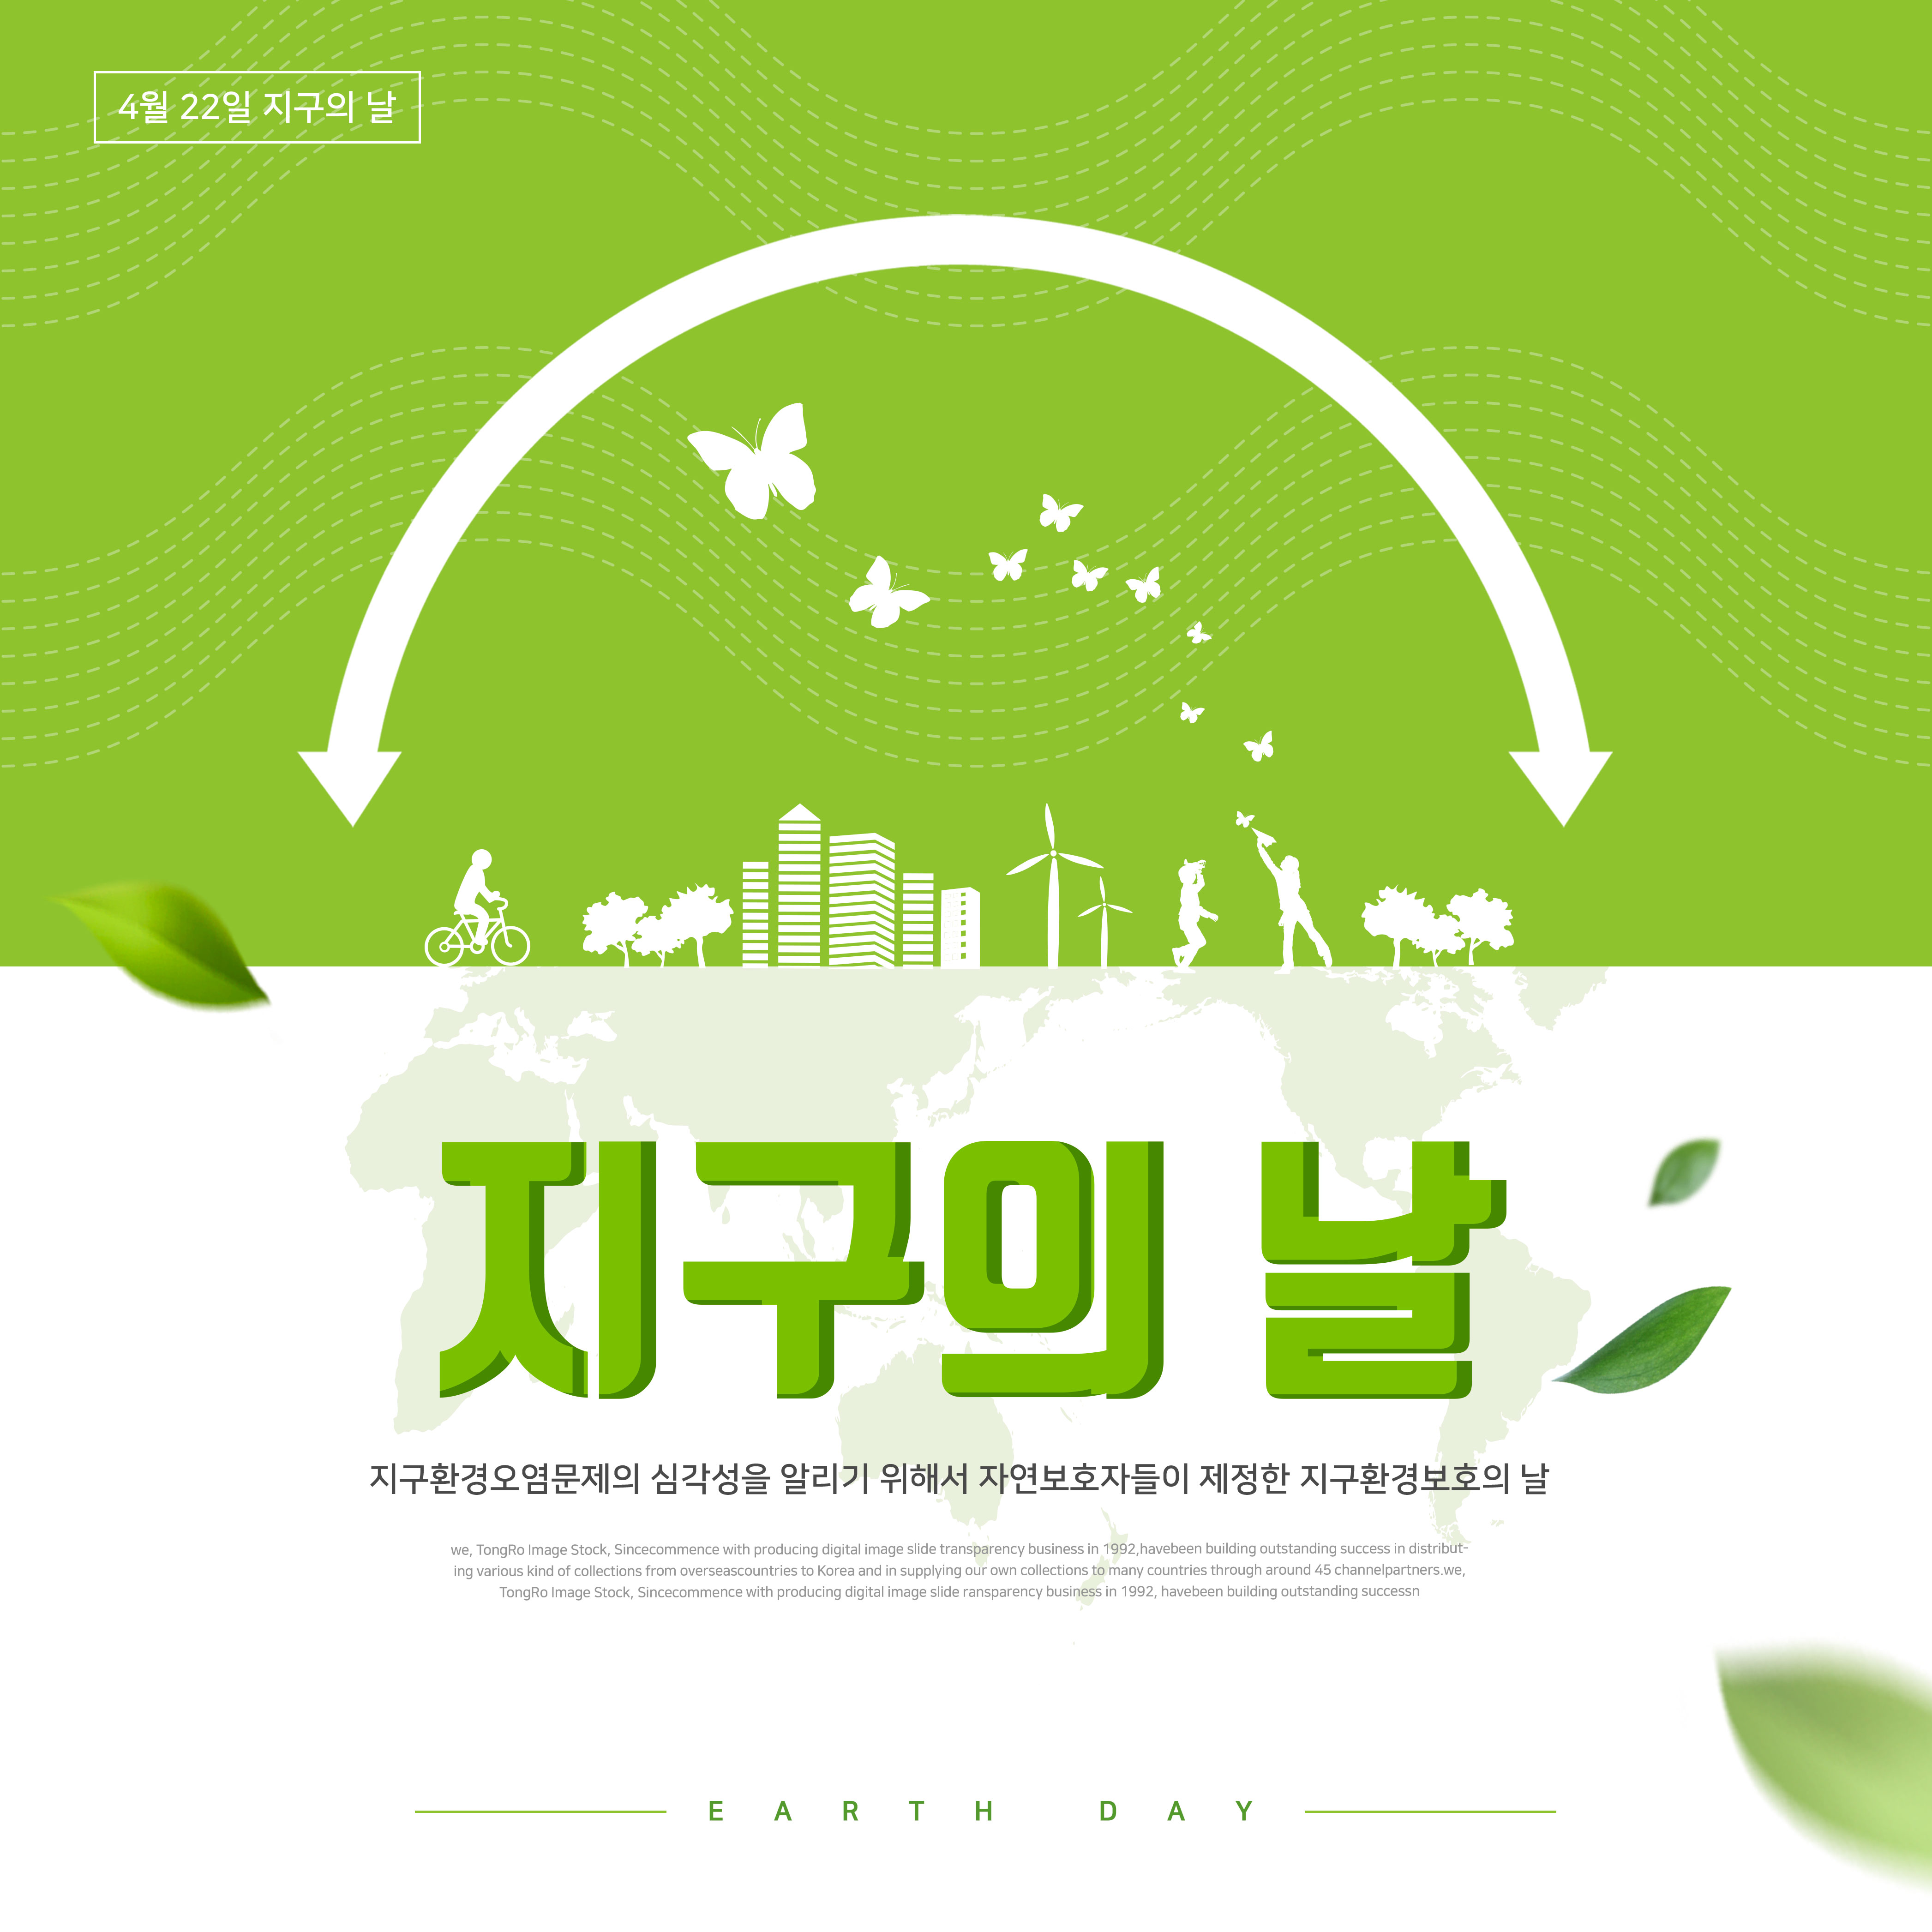 地球环境保护日绿色主题海报PSD素材大洋岛精选韩国素材插图